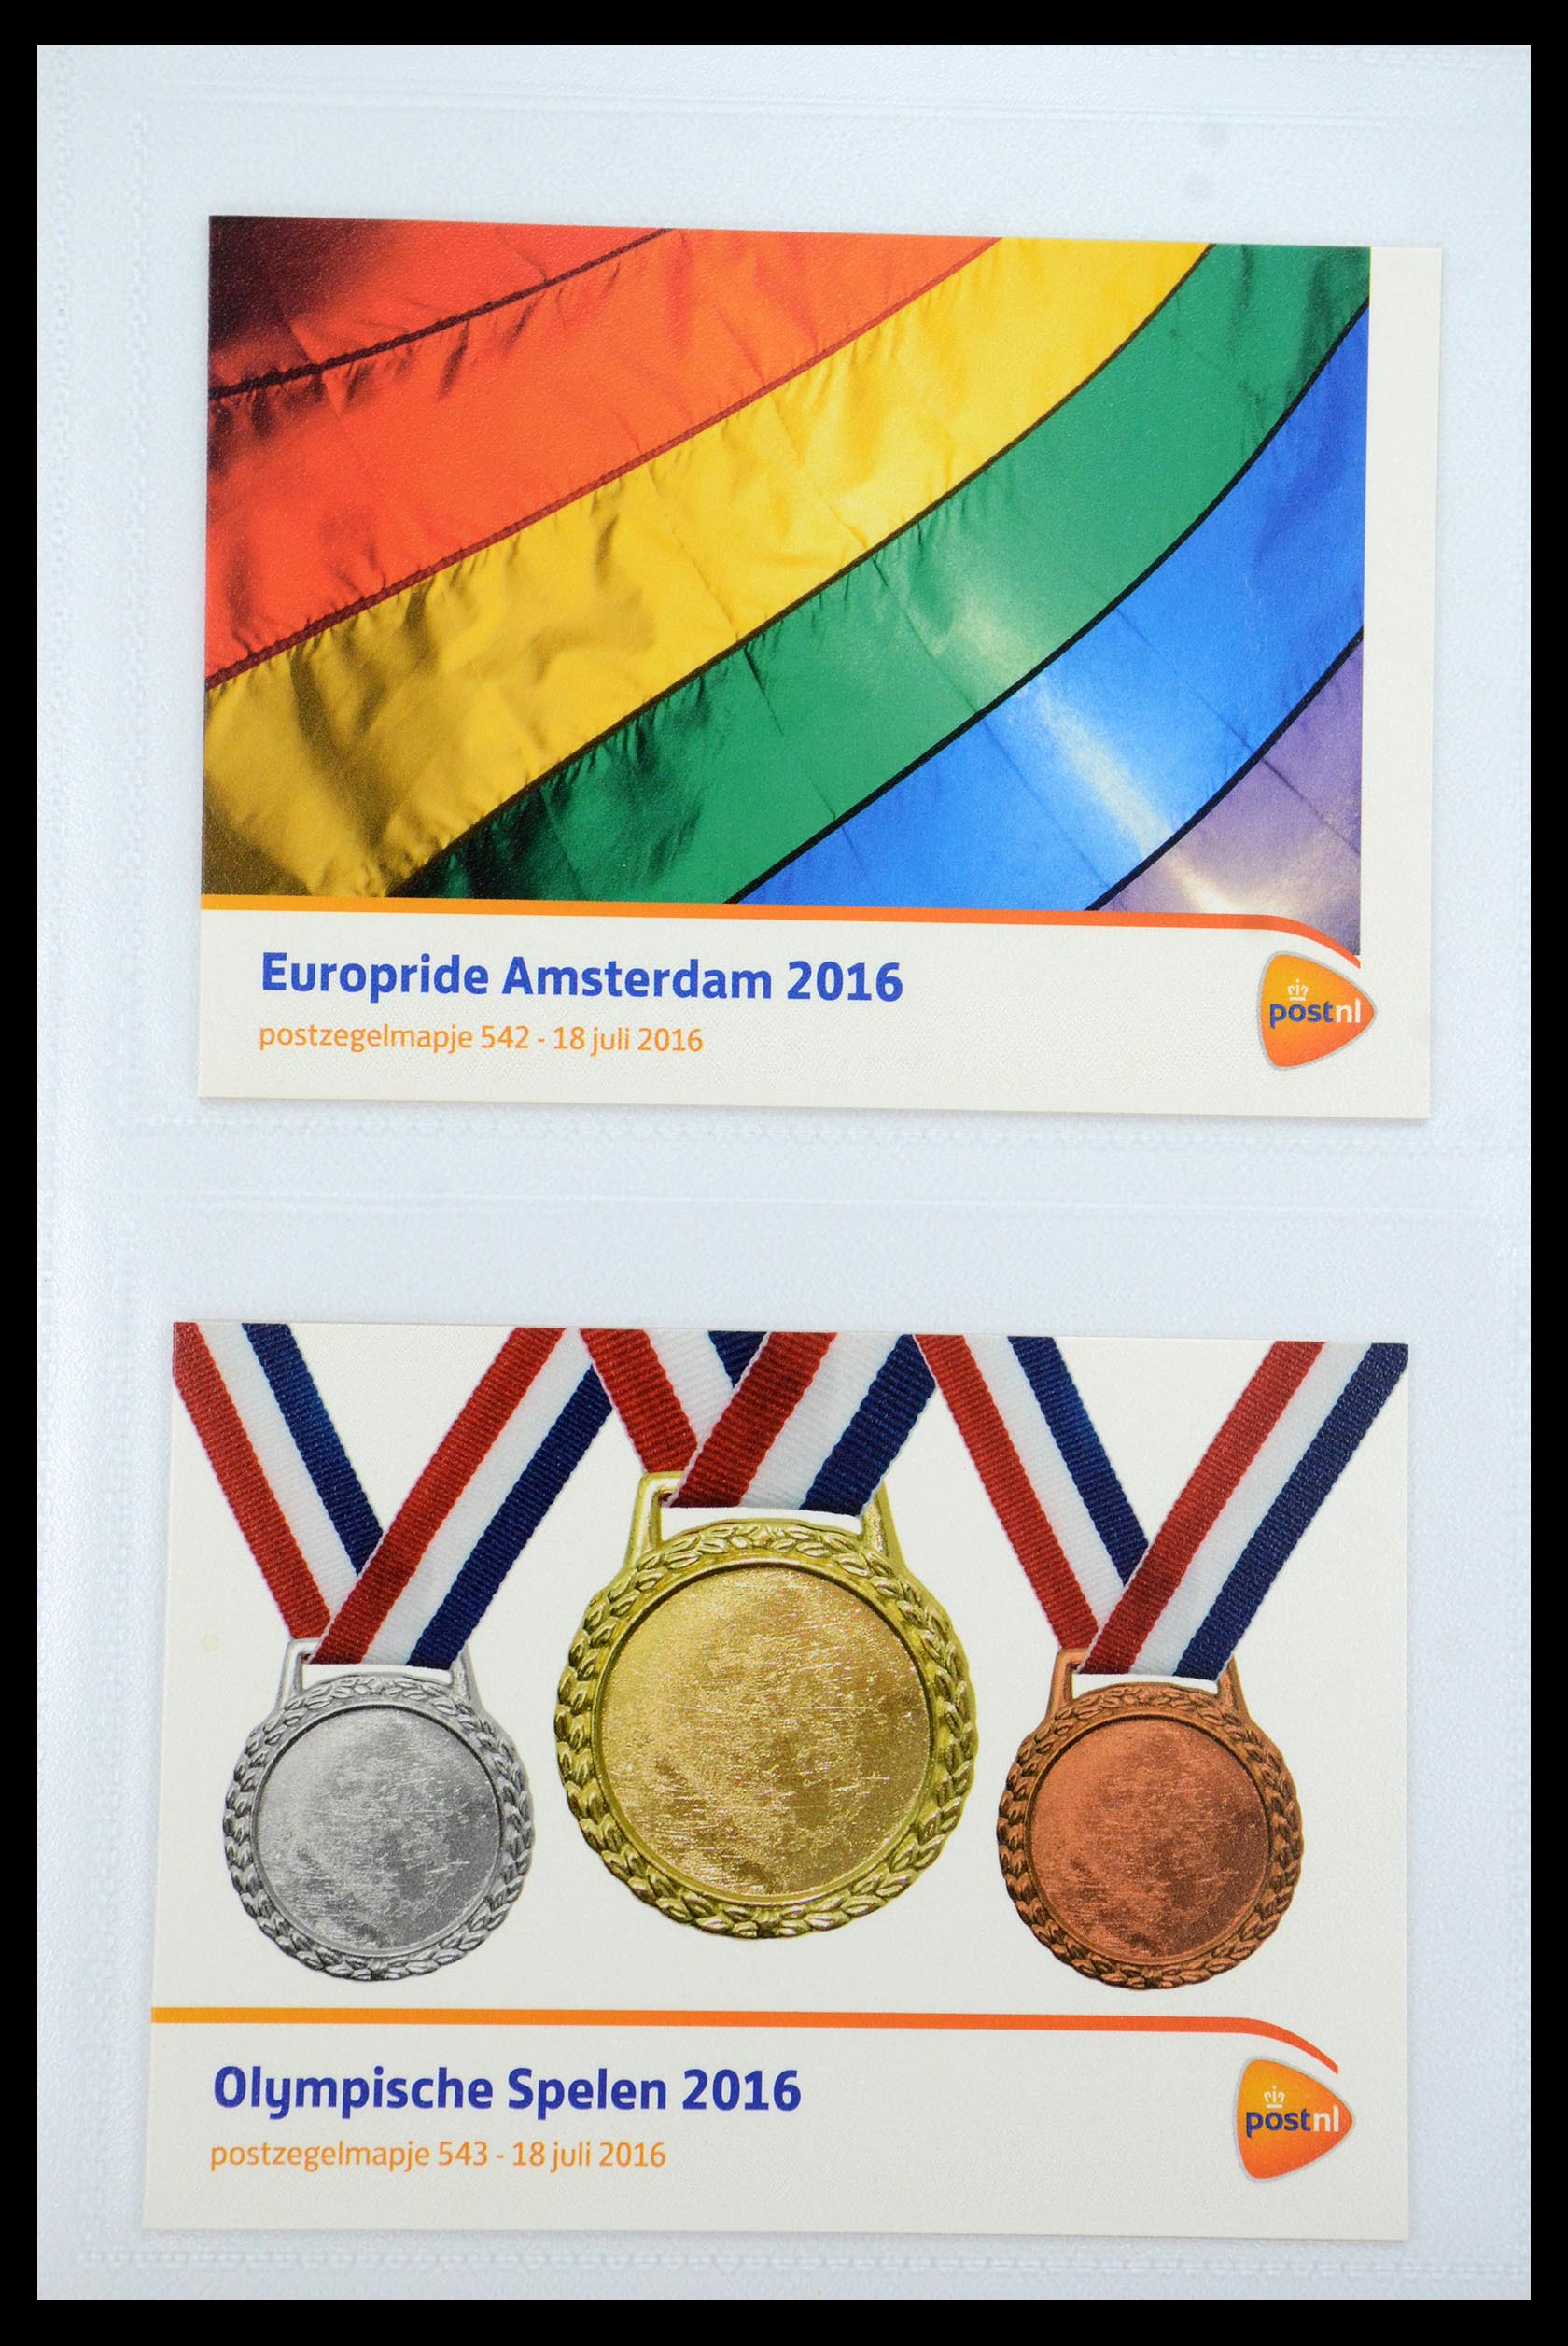 35947 323 - Stamp Collection 35947 Netherlands PTT presentation packs 1982-2019!